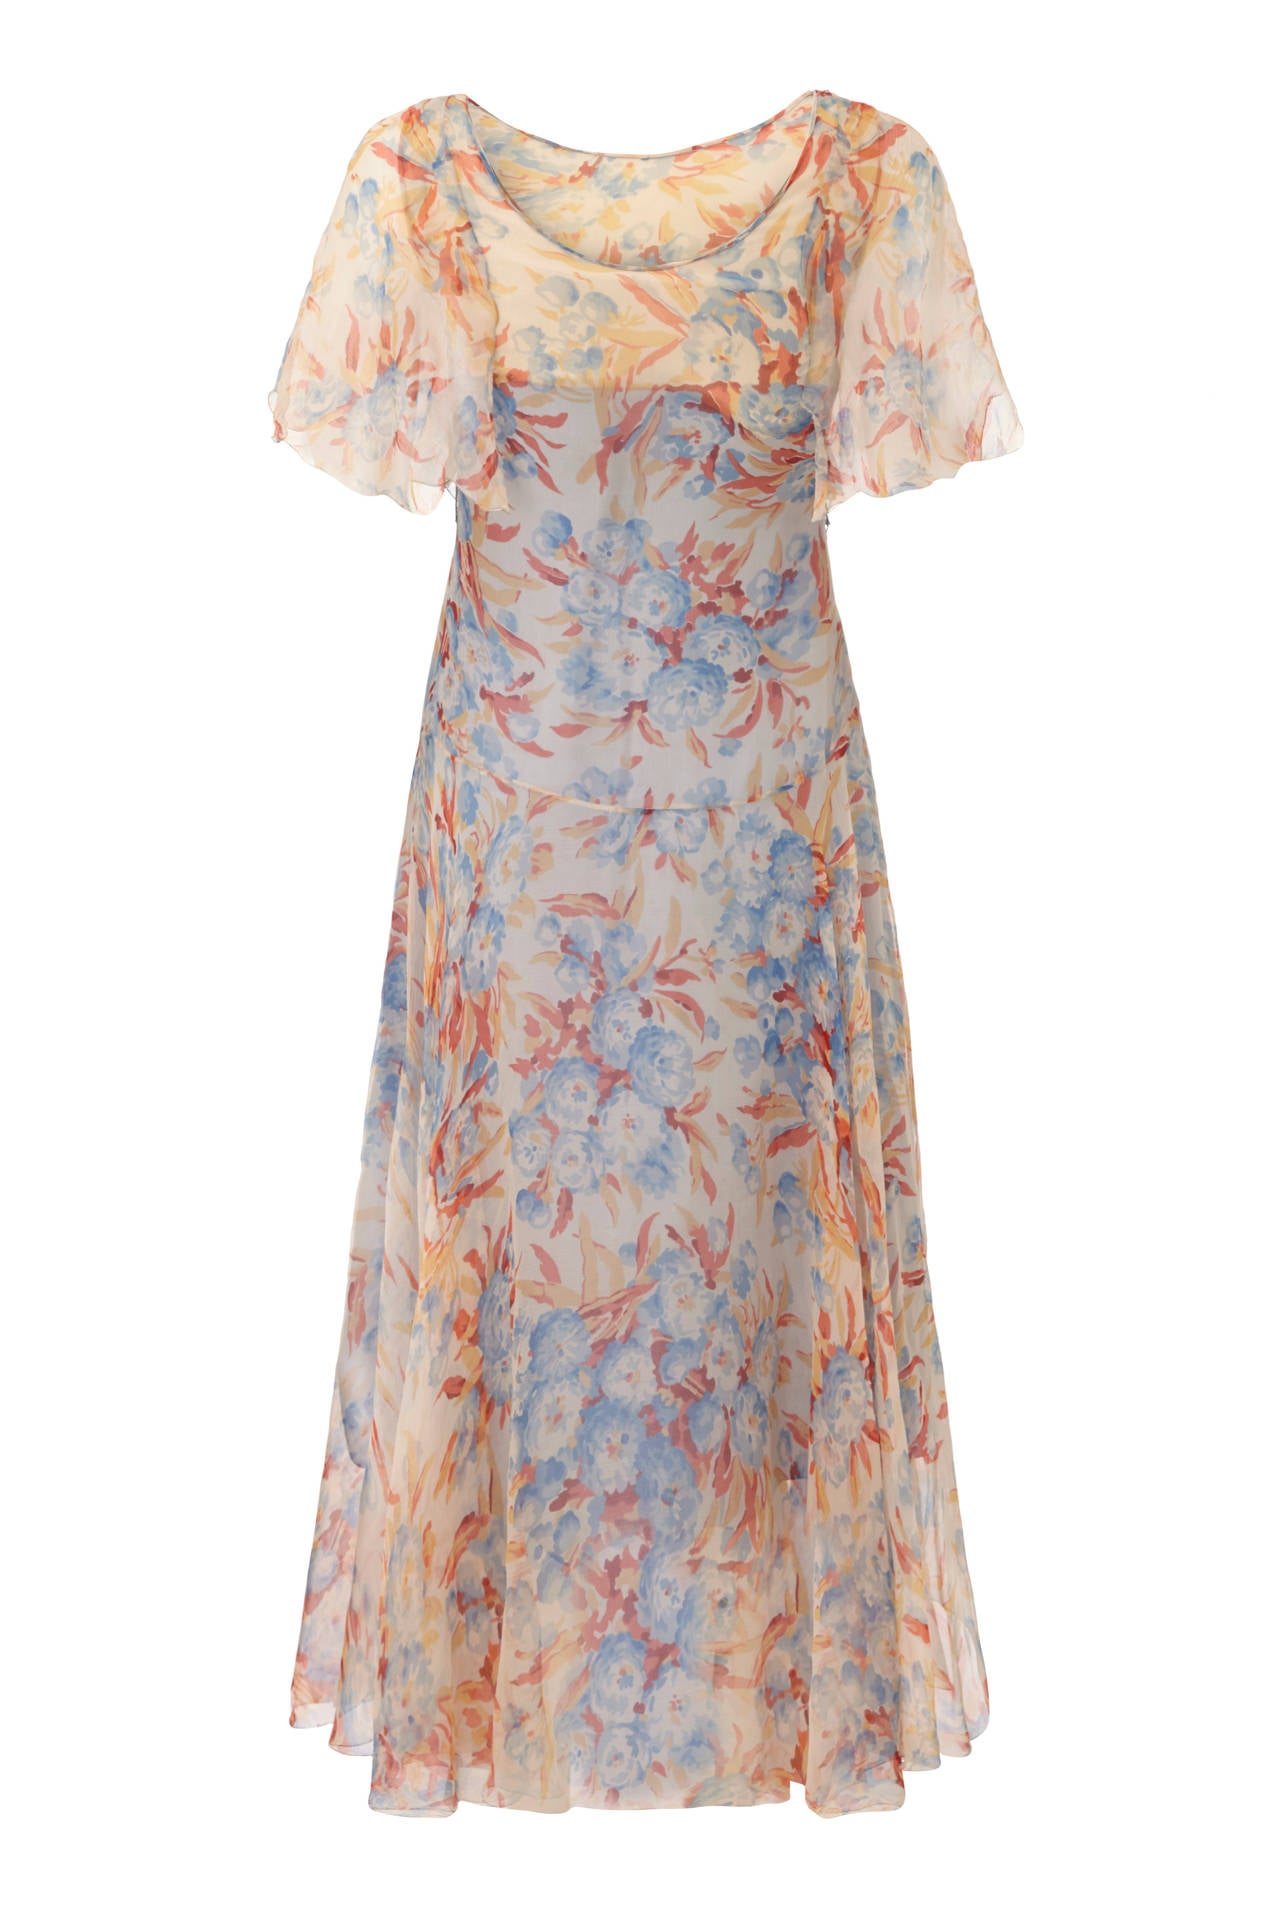 Dieses bezaubernde Kleid aus Seidenchiffon mit Blumendruck aus den 1920er Jahren ist herrlich feminin und für ein Stück aus dieser Epoche in absolut schönem Zustand. Das Kleid hat sowohl vorne als auch hinten einen Rundhalsausschnitt und verfügt